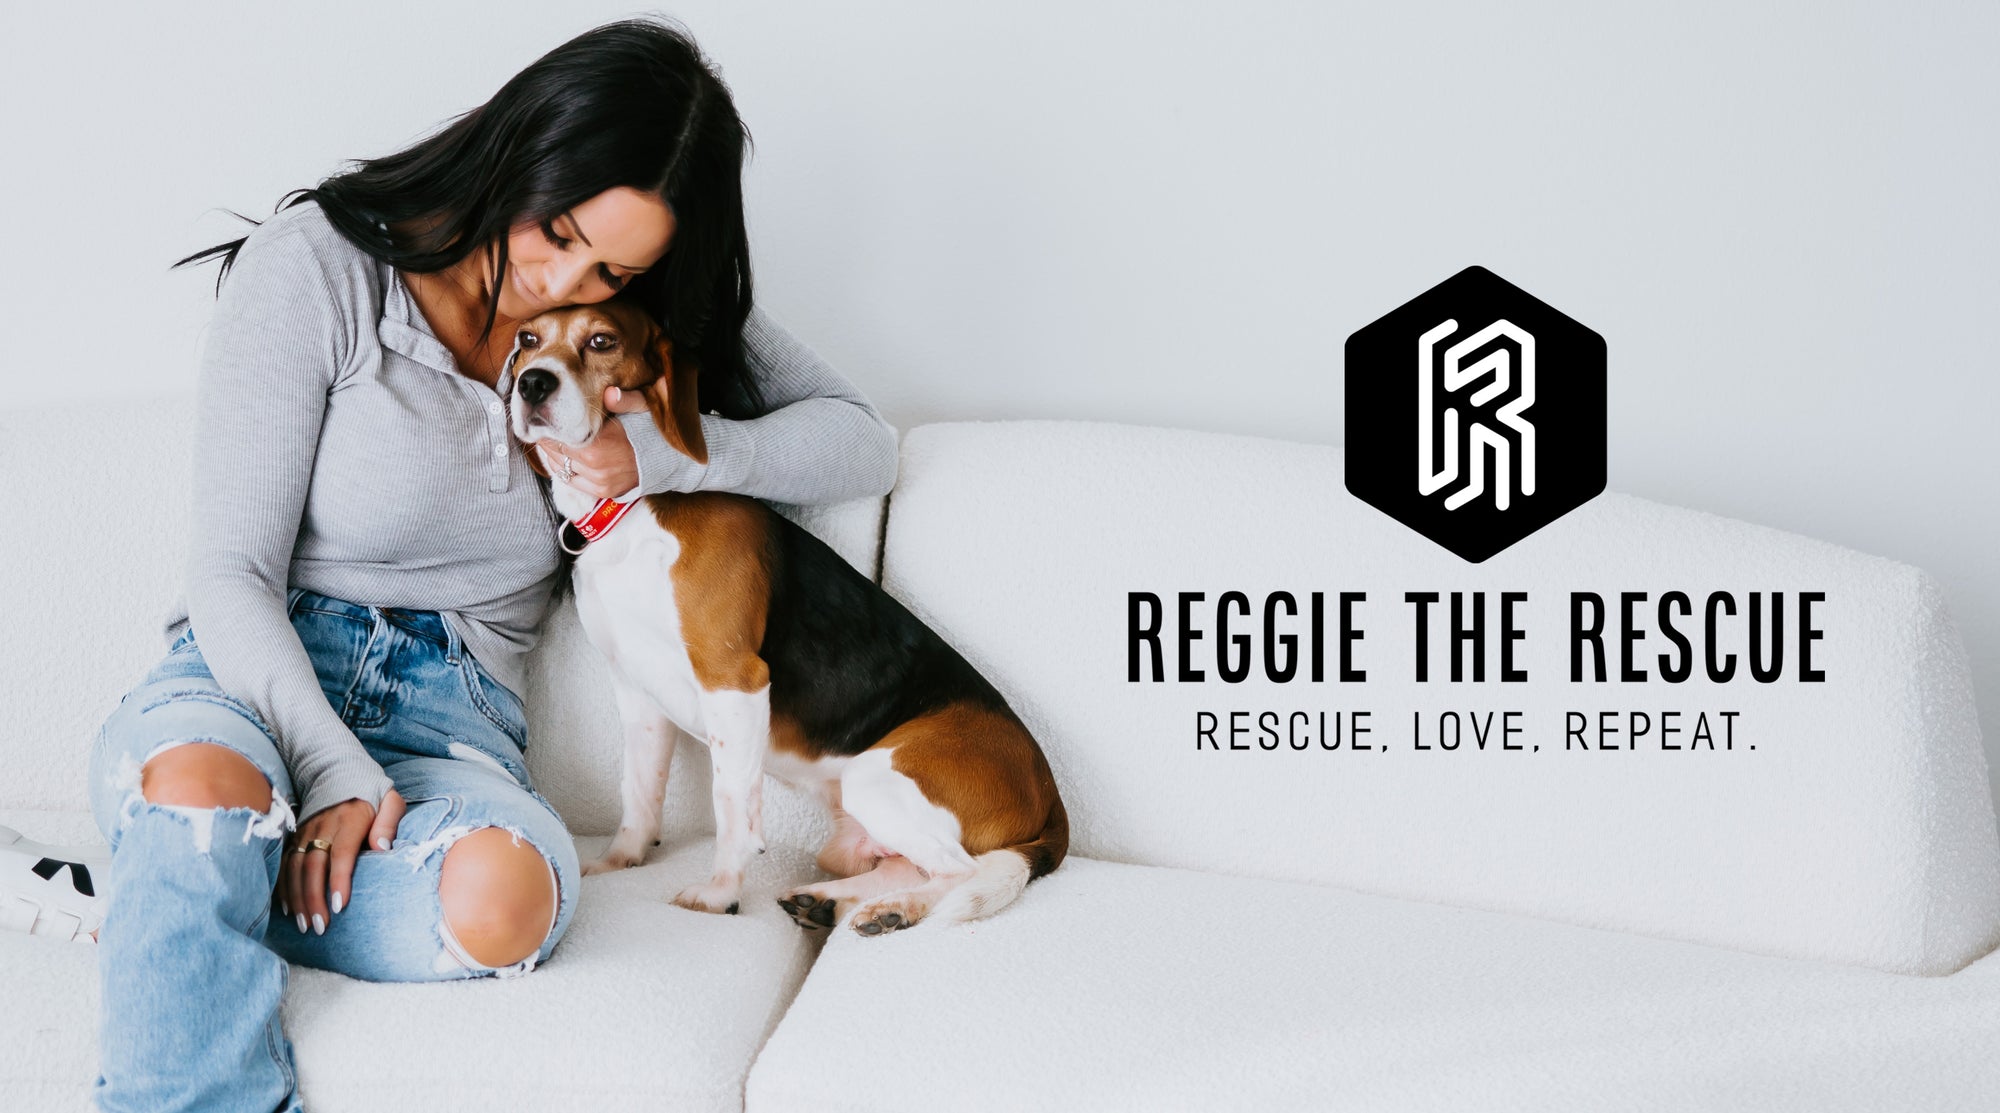 Reggie the rescue